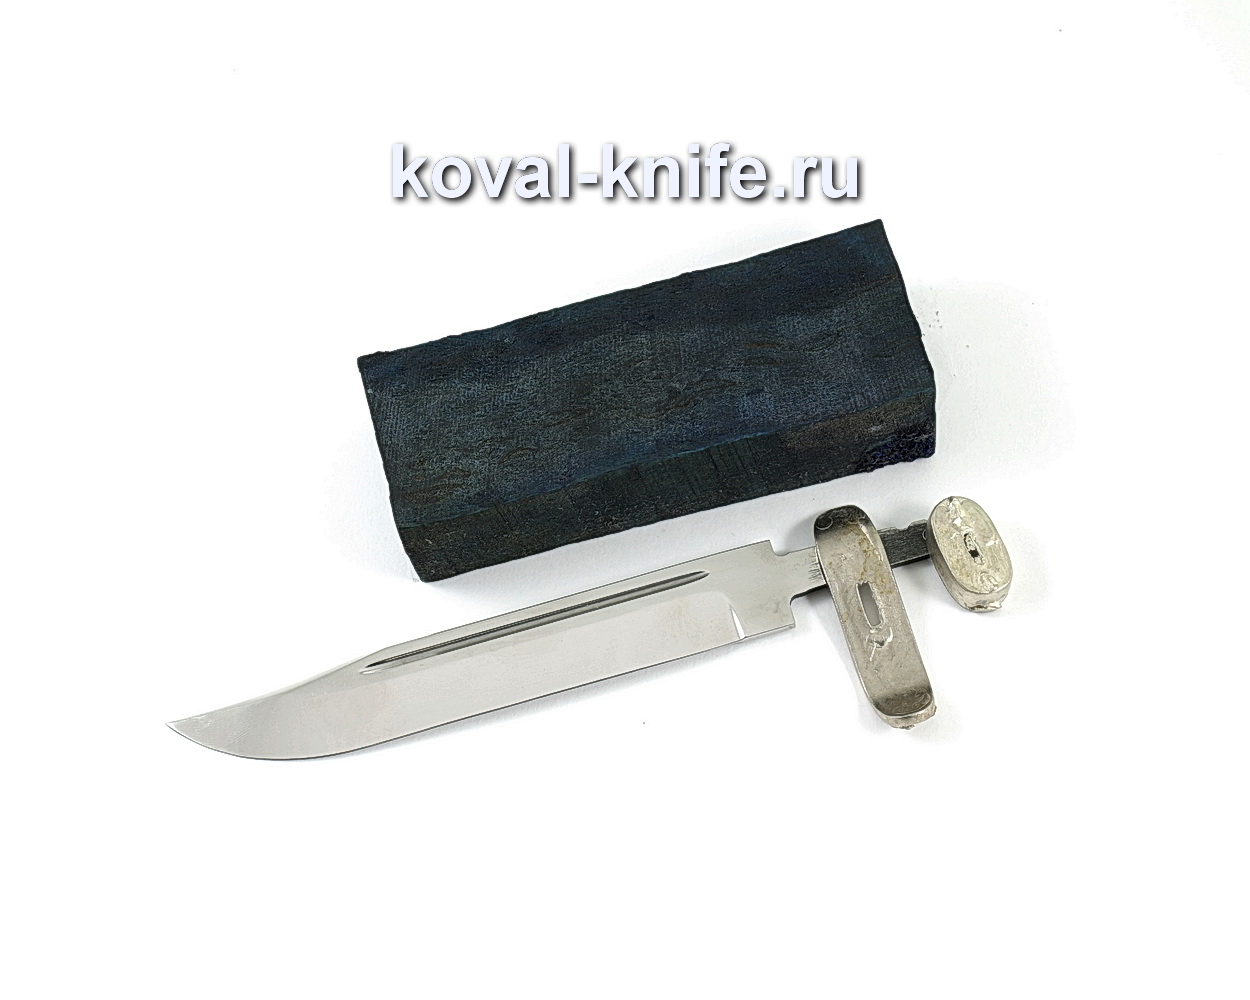 Комплект для ножа НР-40 1 (клинок кованая 95х18 2,4мм, литье 2шт., граб брусок)